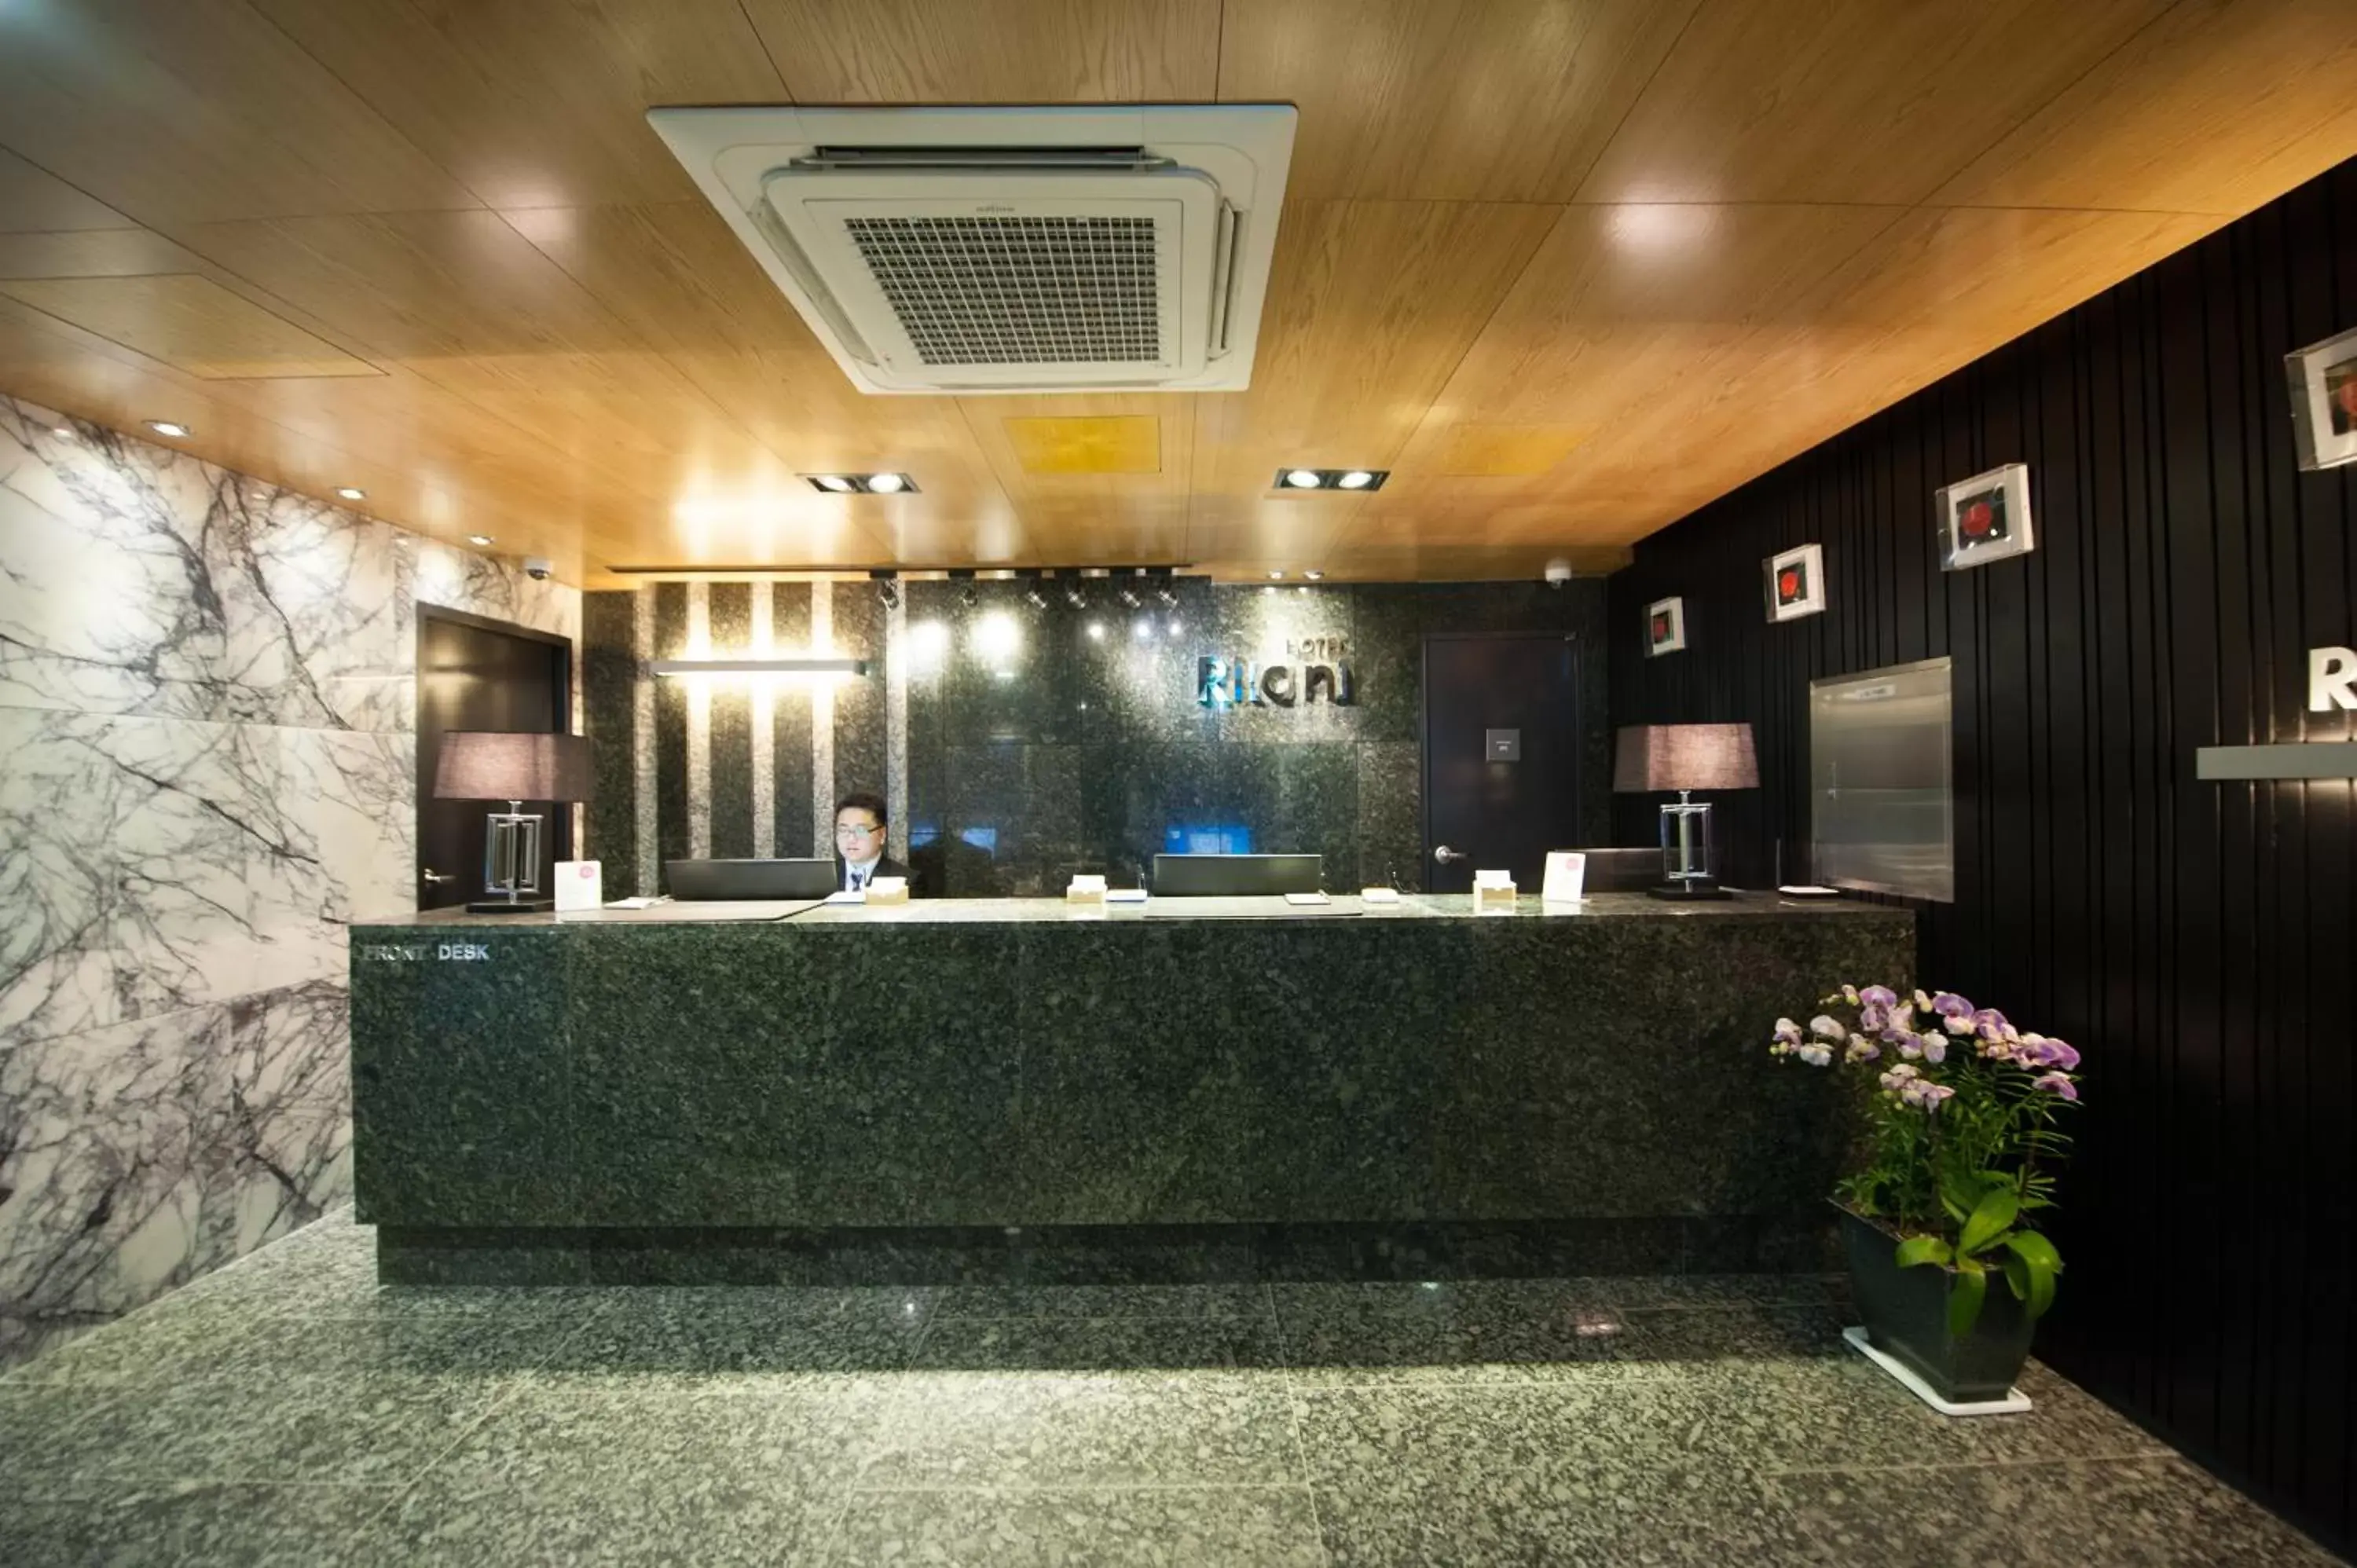 Lobby or reception, Lobby/Reception in Rian Hotel